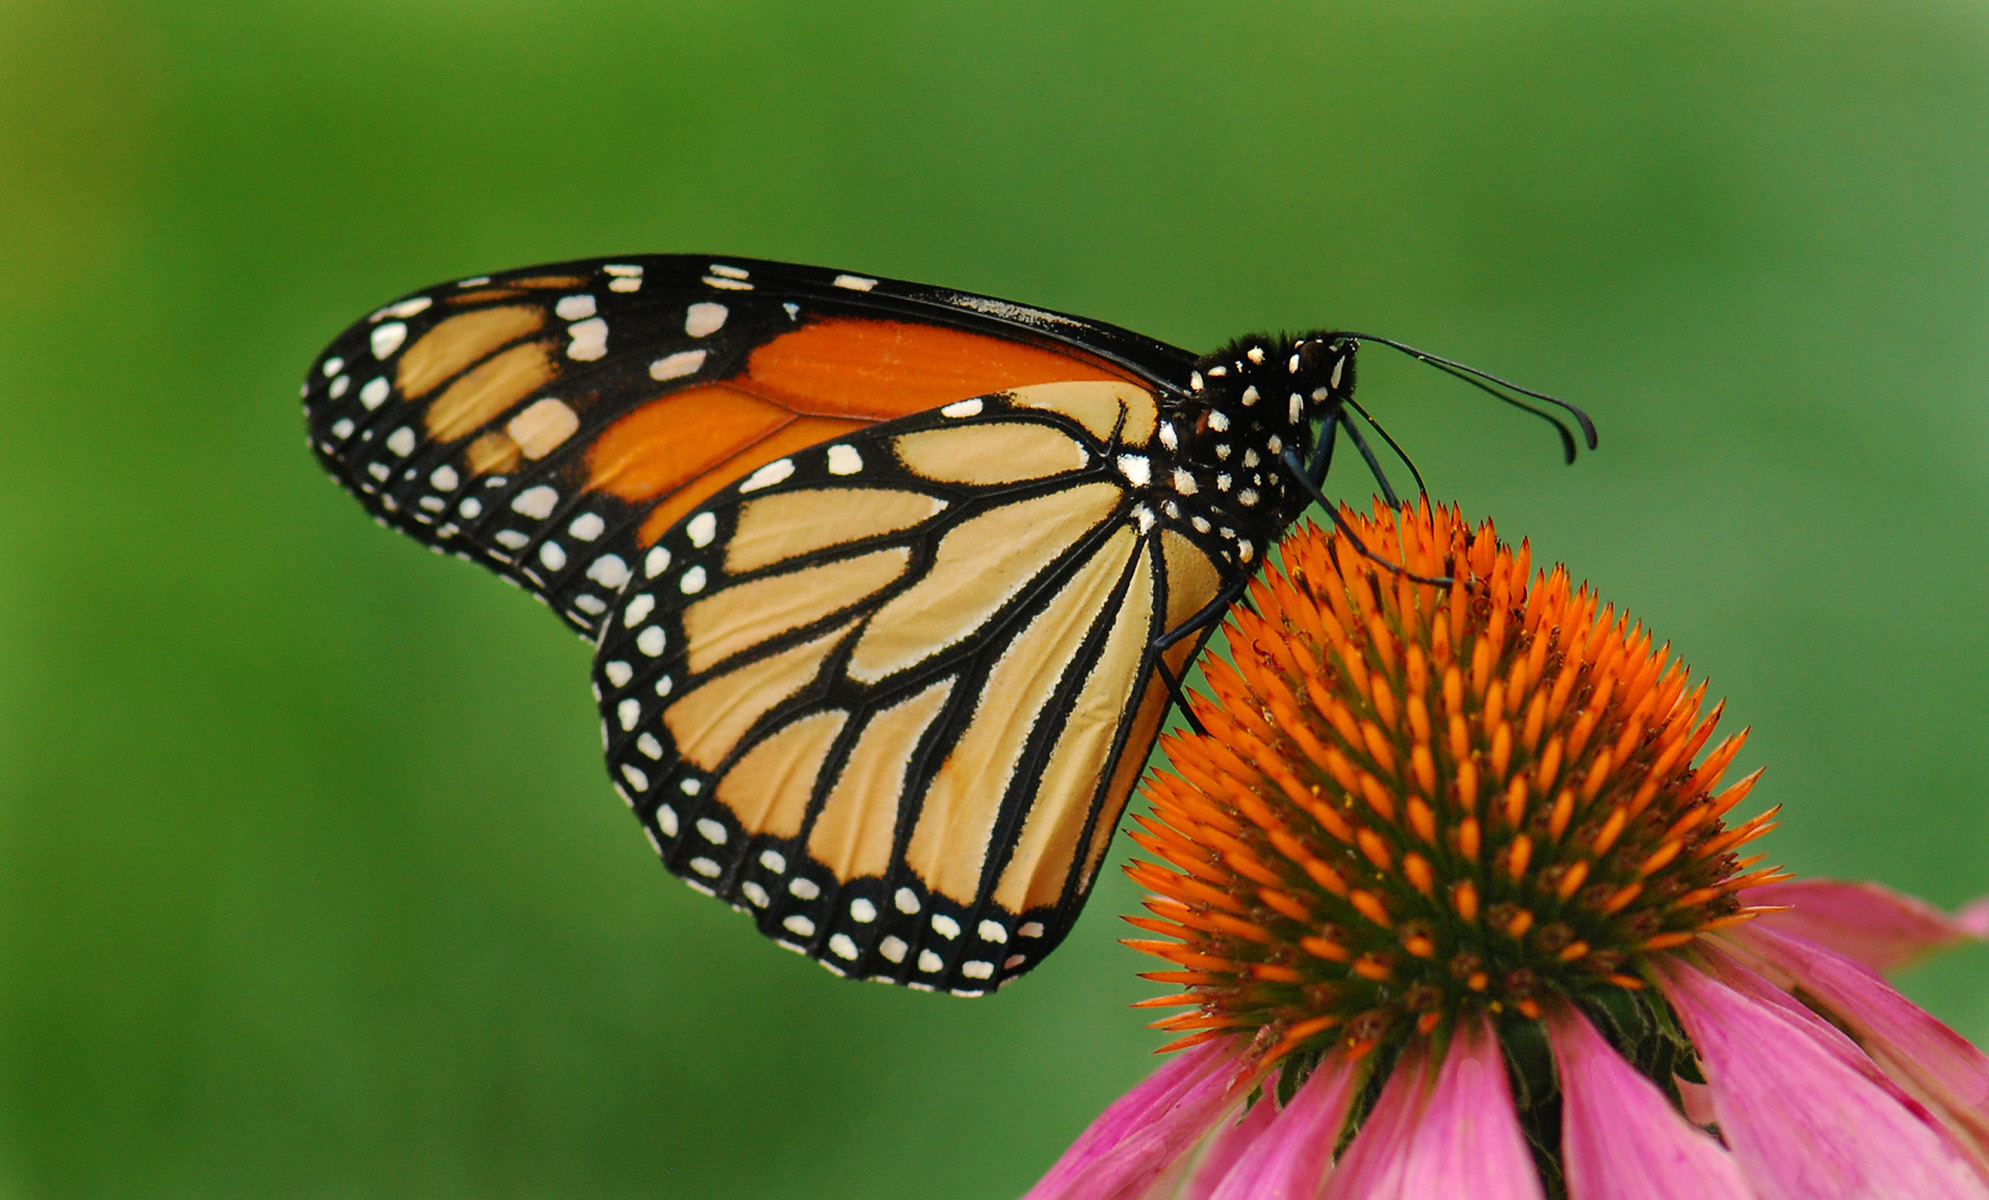 It’s Time For Texas’ Second Annual Pollinator BioBlitz